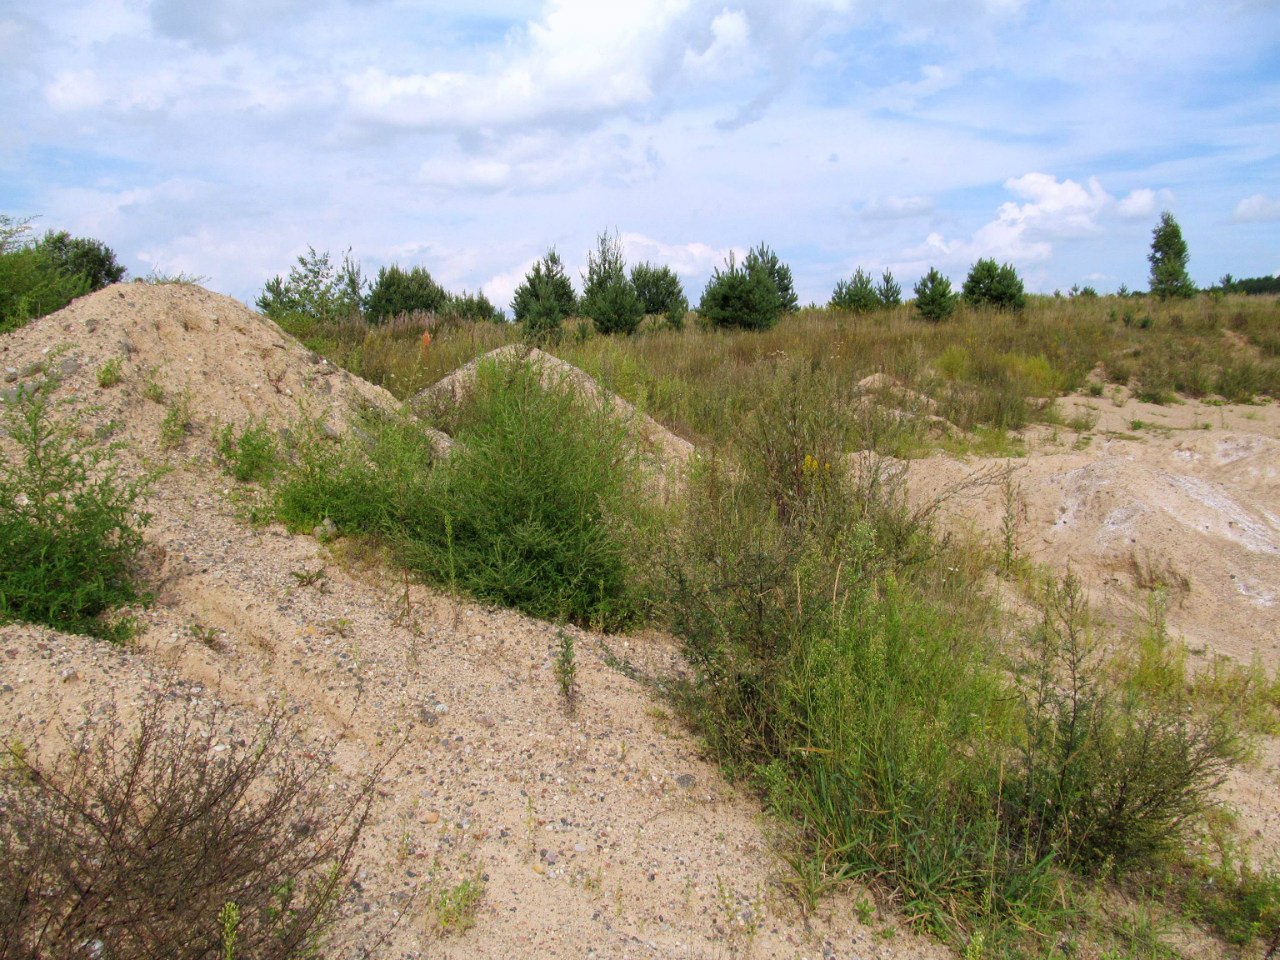 Песчаный карьер "Рутковское", изображение ландшафта.